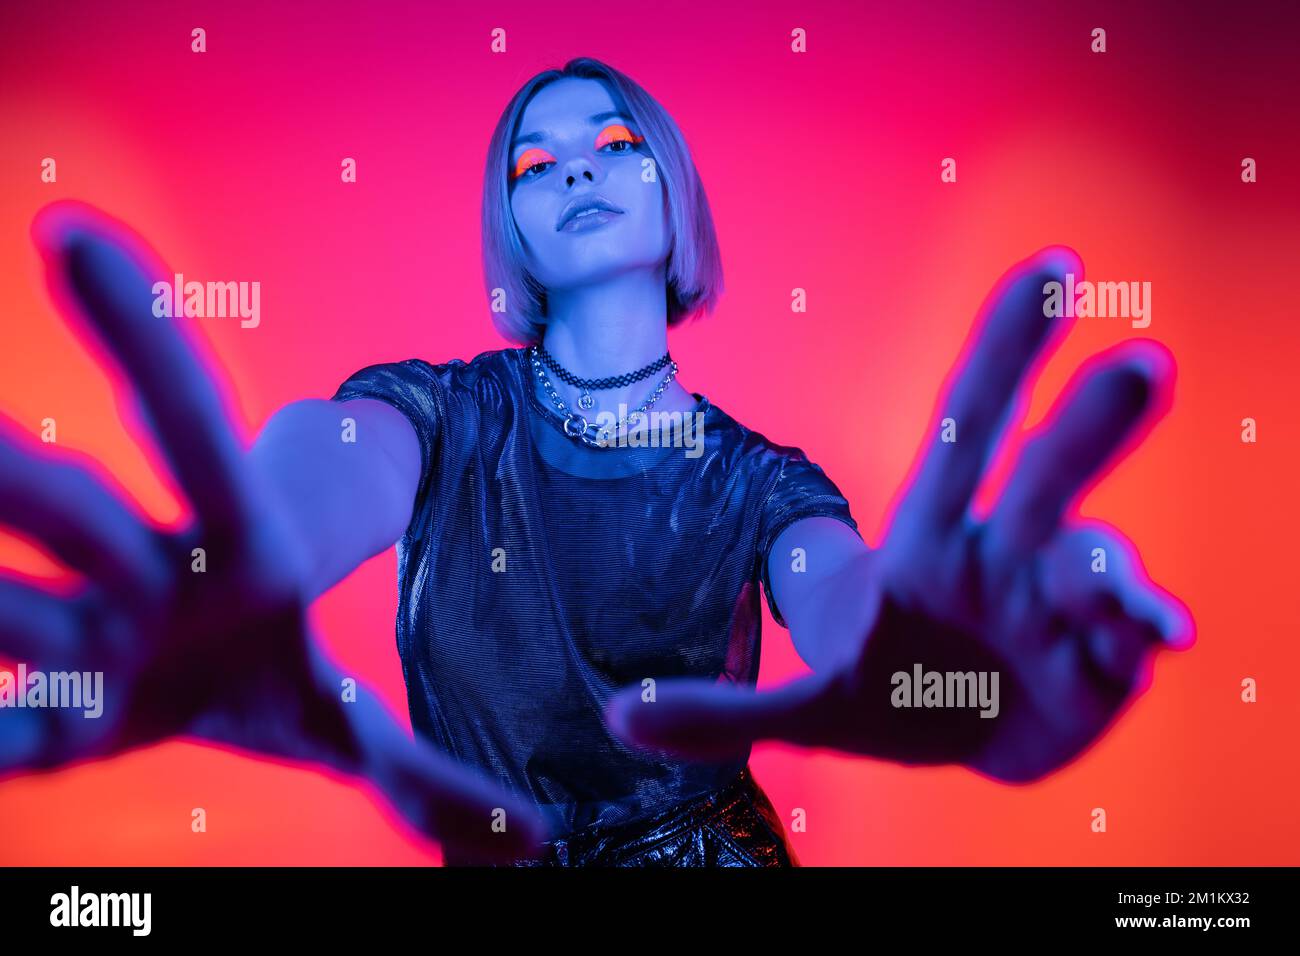 vue à angle bas de la femme avec maquillage lumineux et mains étirées dans la lumière bleue néon sur fond corail et rose, image de stock Banque D'Images